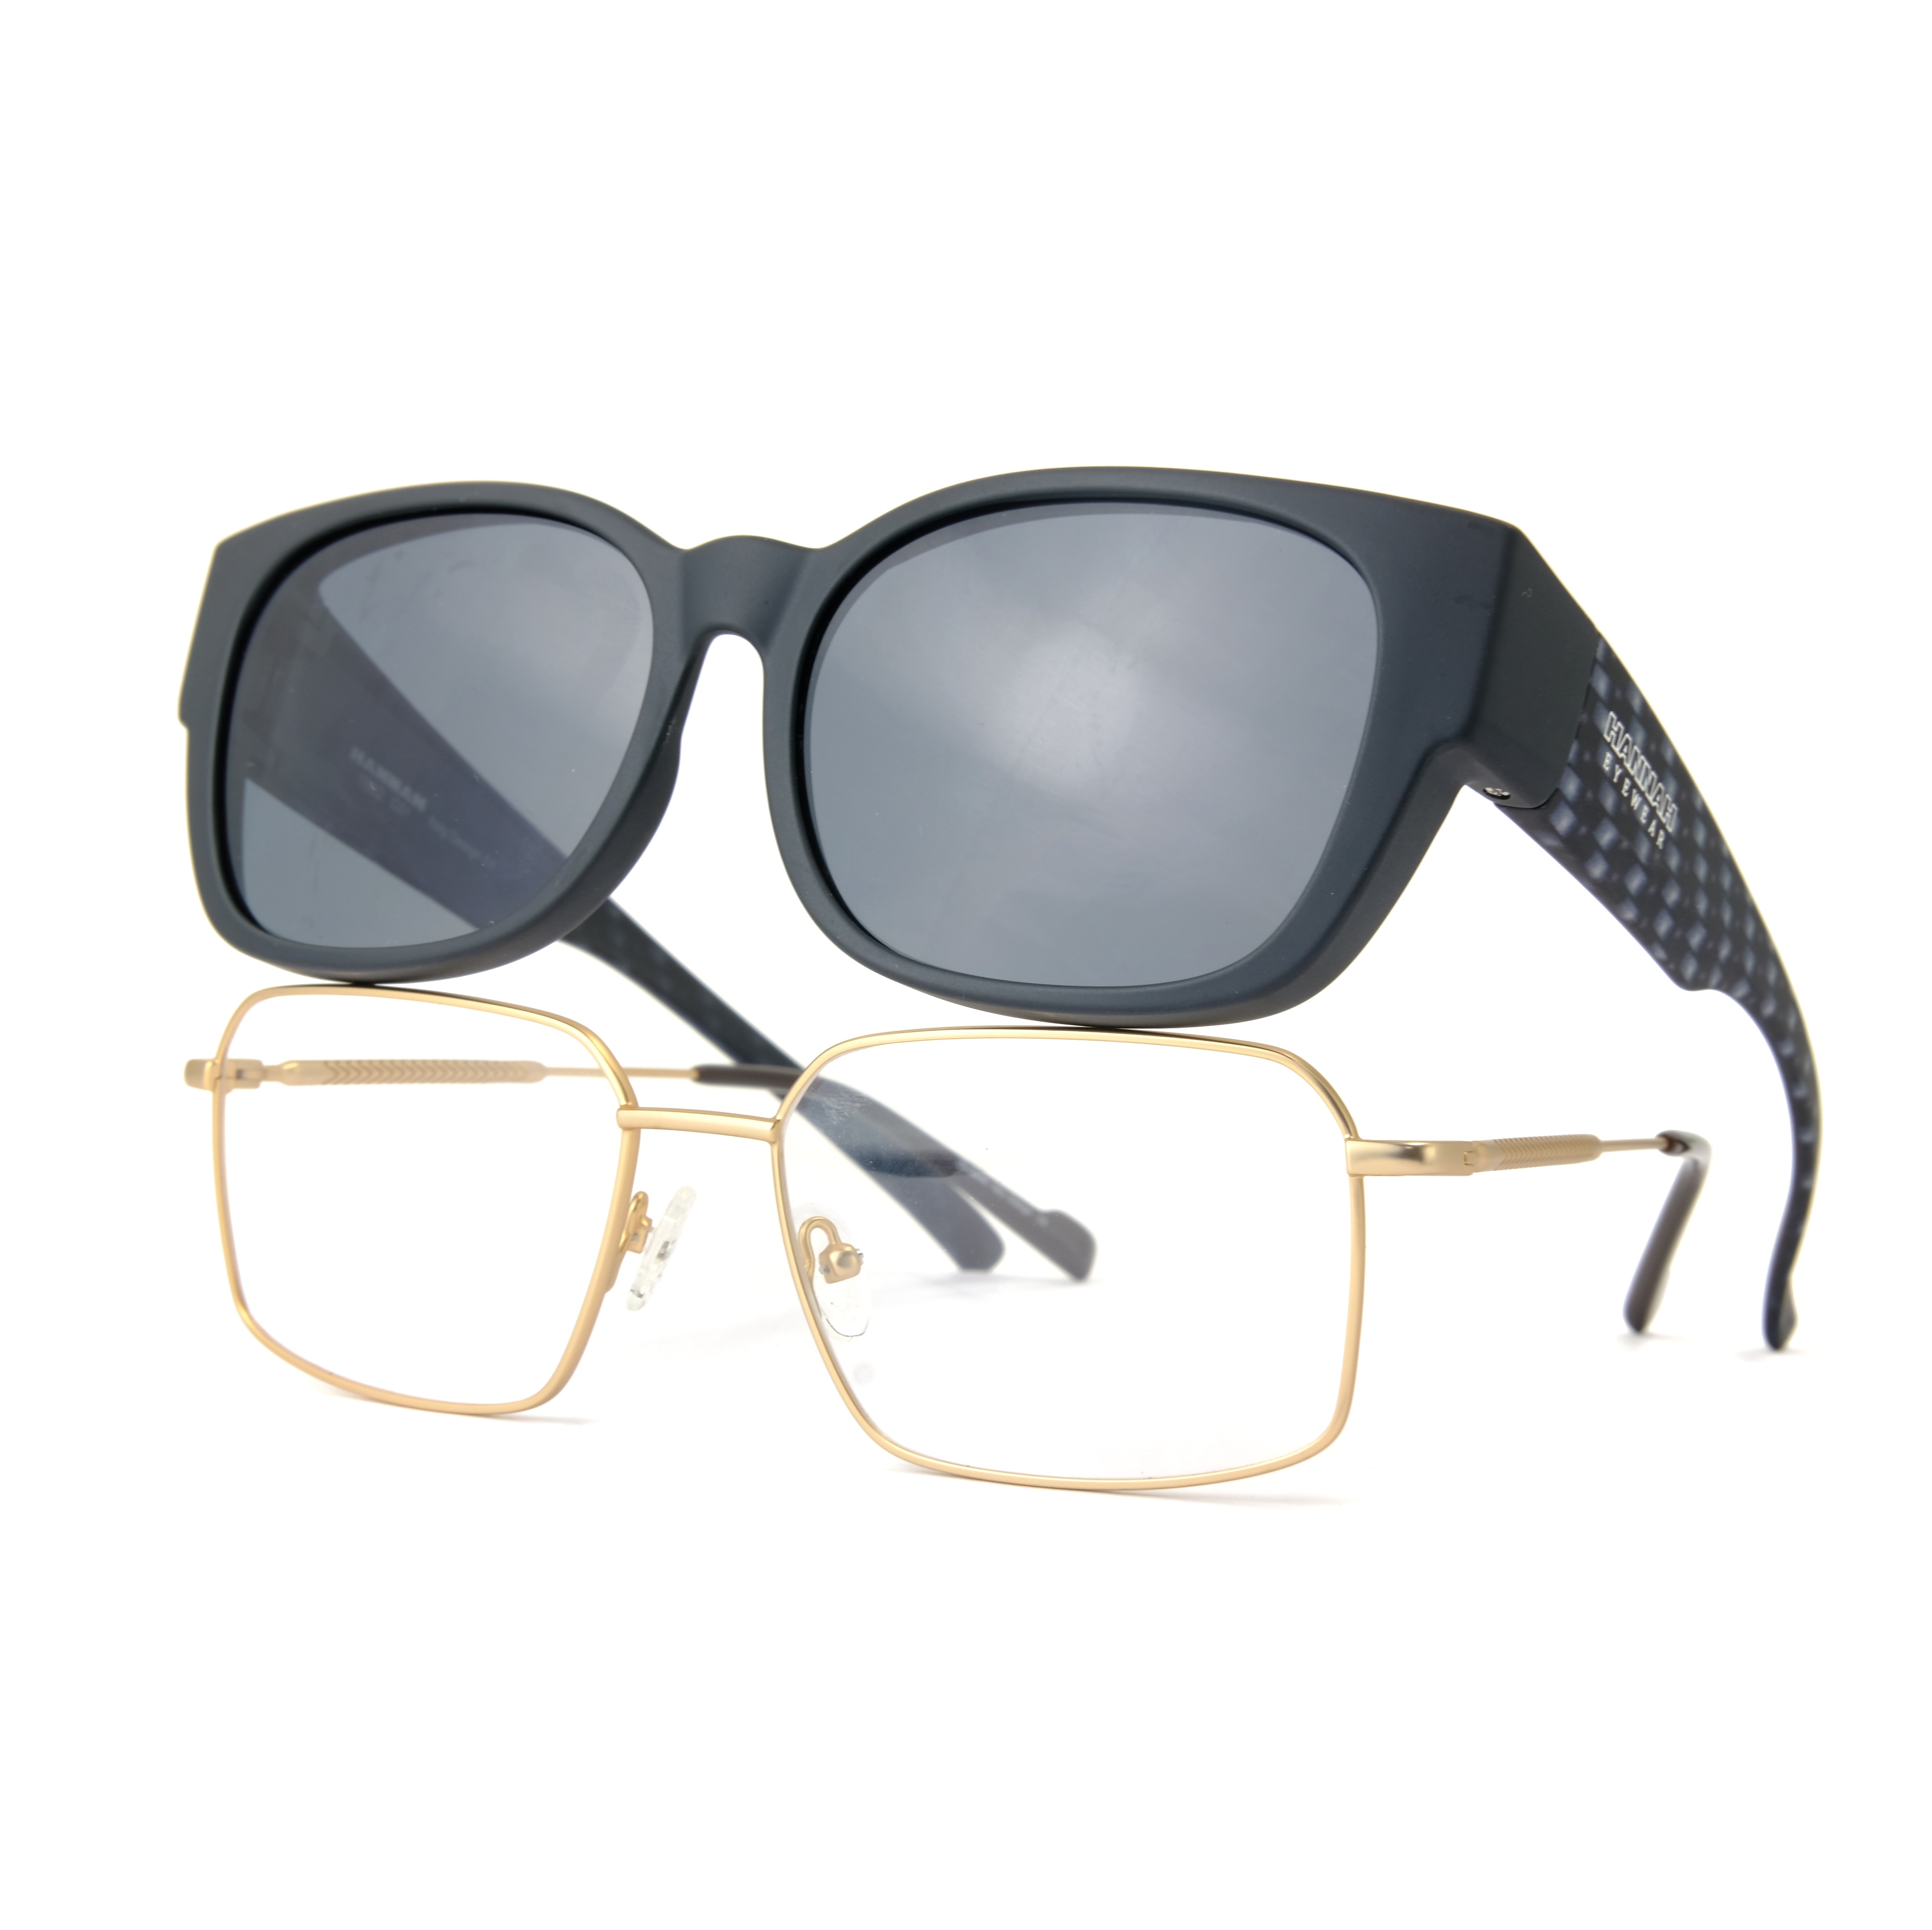 Black SWISS TR Fitover Gafas de sol Miopía Adecuado Fábrica 900 Gafas Las mejores empresas de gafas